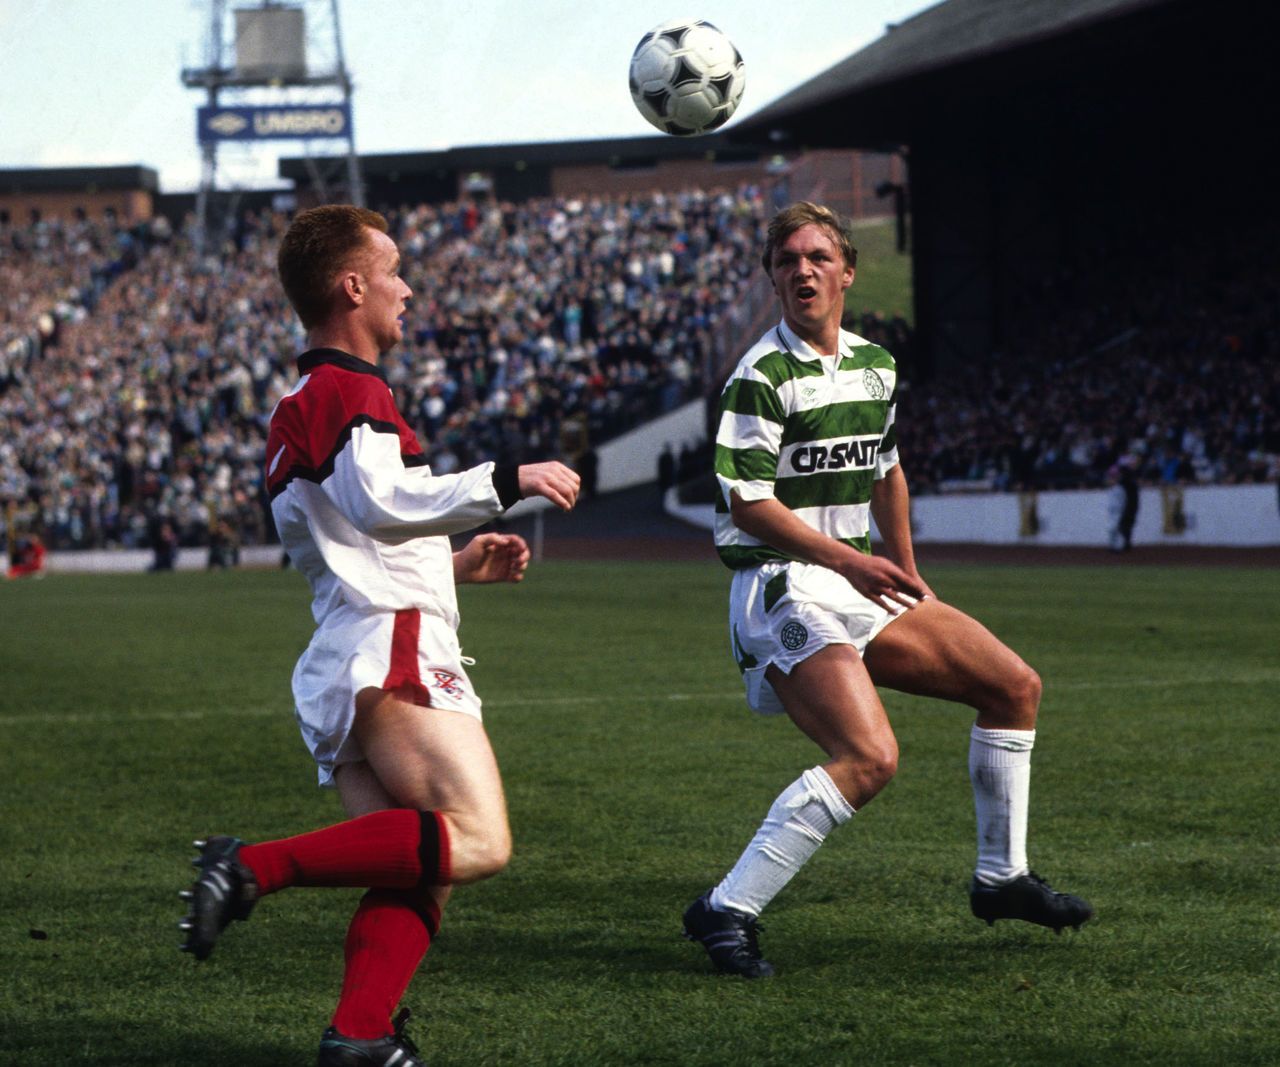 Clydebank's Paul Harvey and Celtic midfielder Steve Fulton battle for possession.